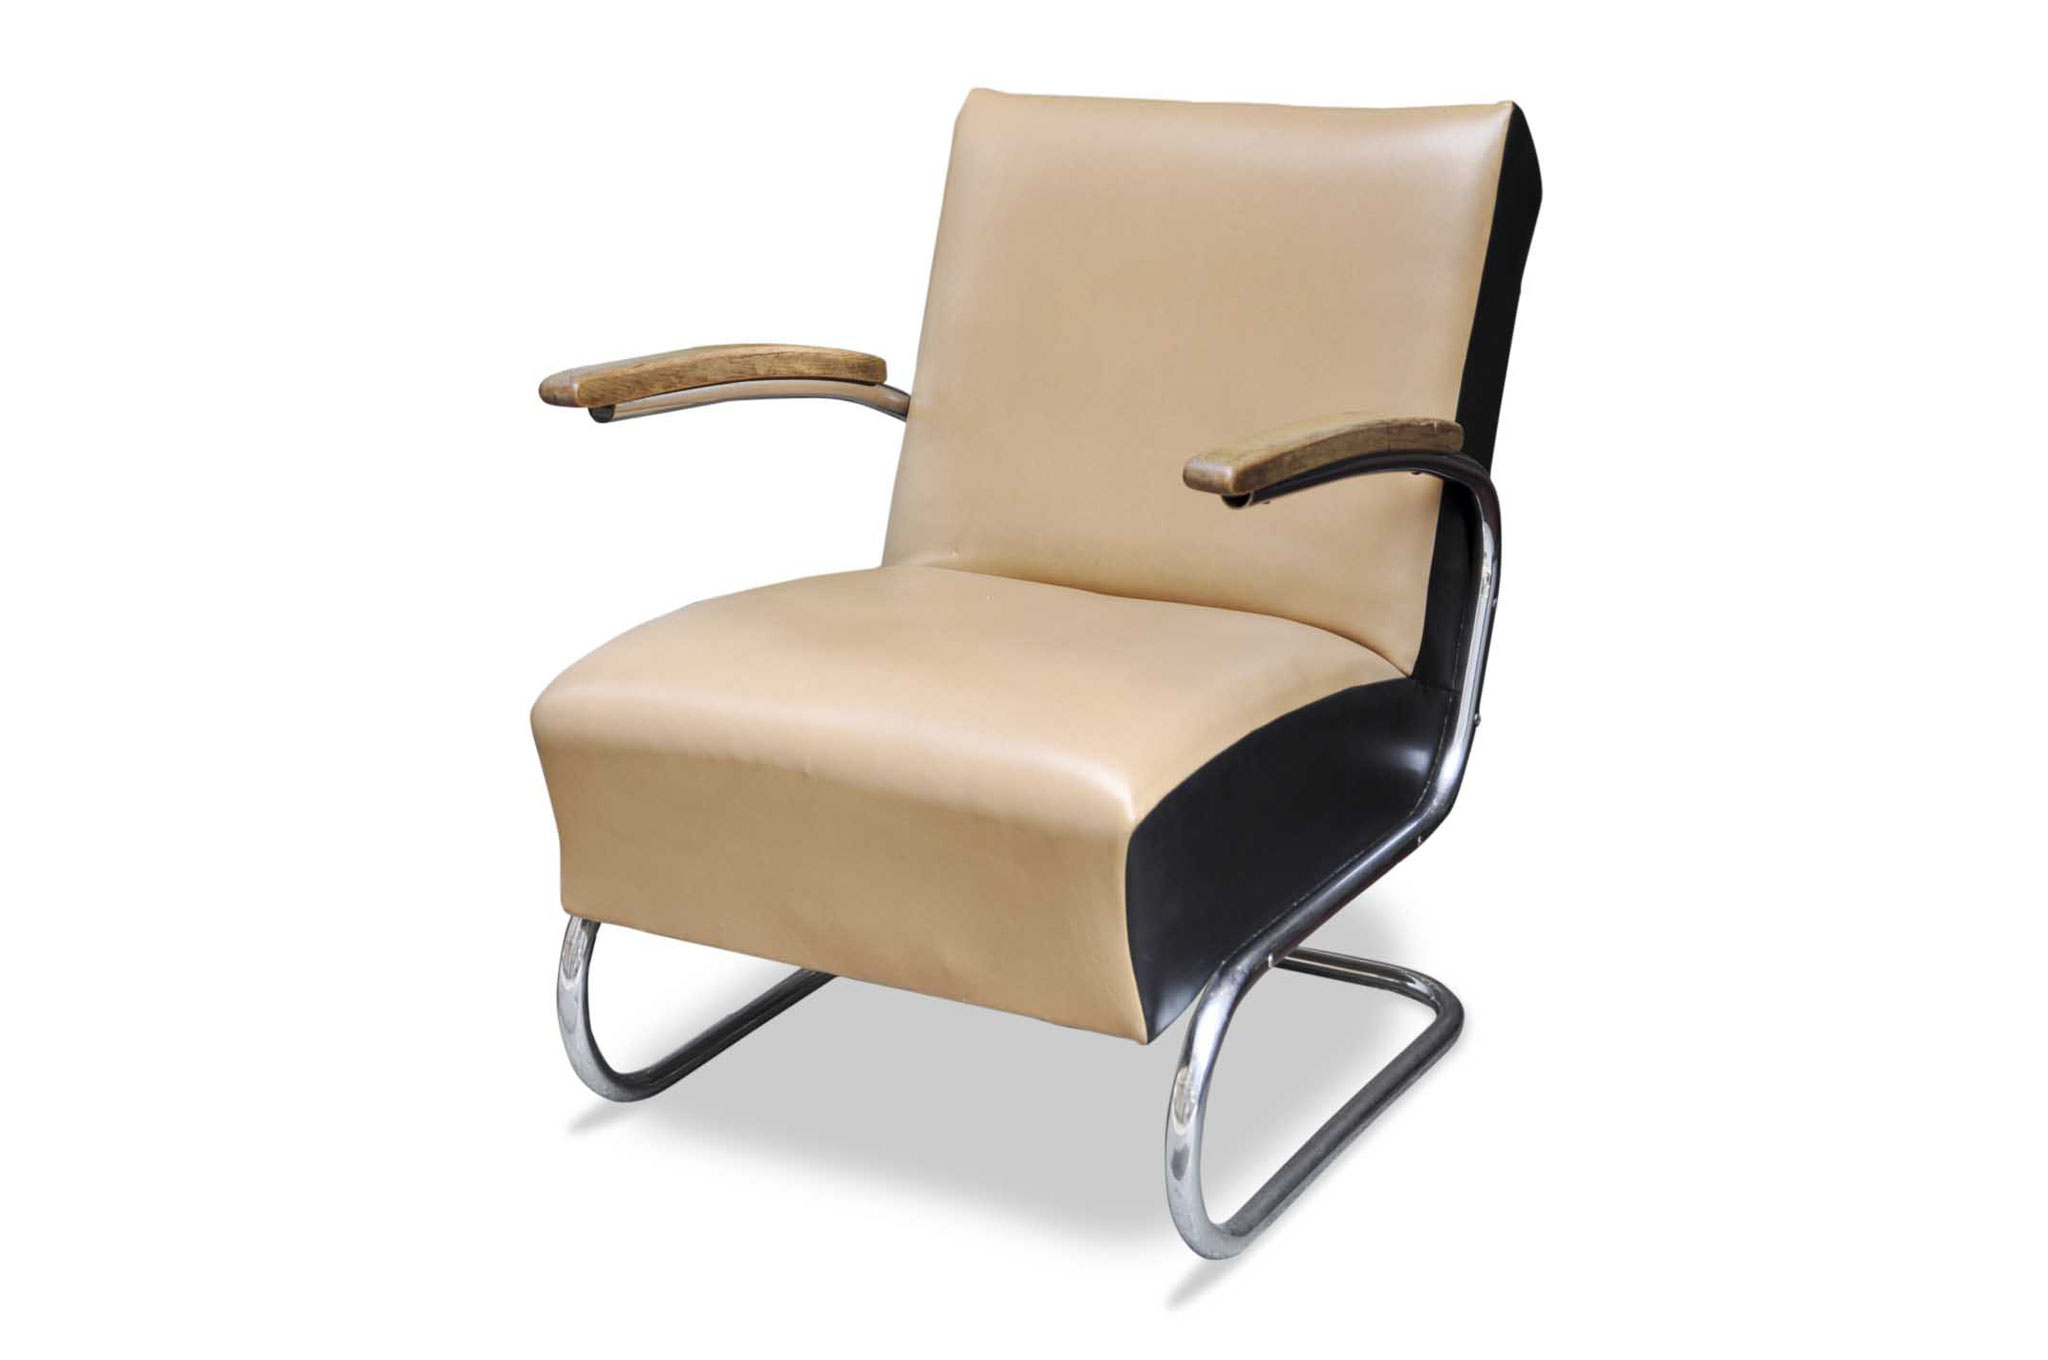 Bauhaus cantilever chair new york